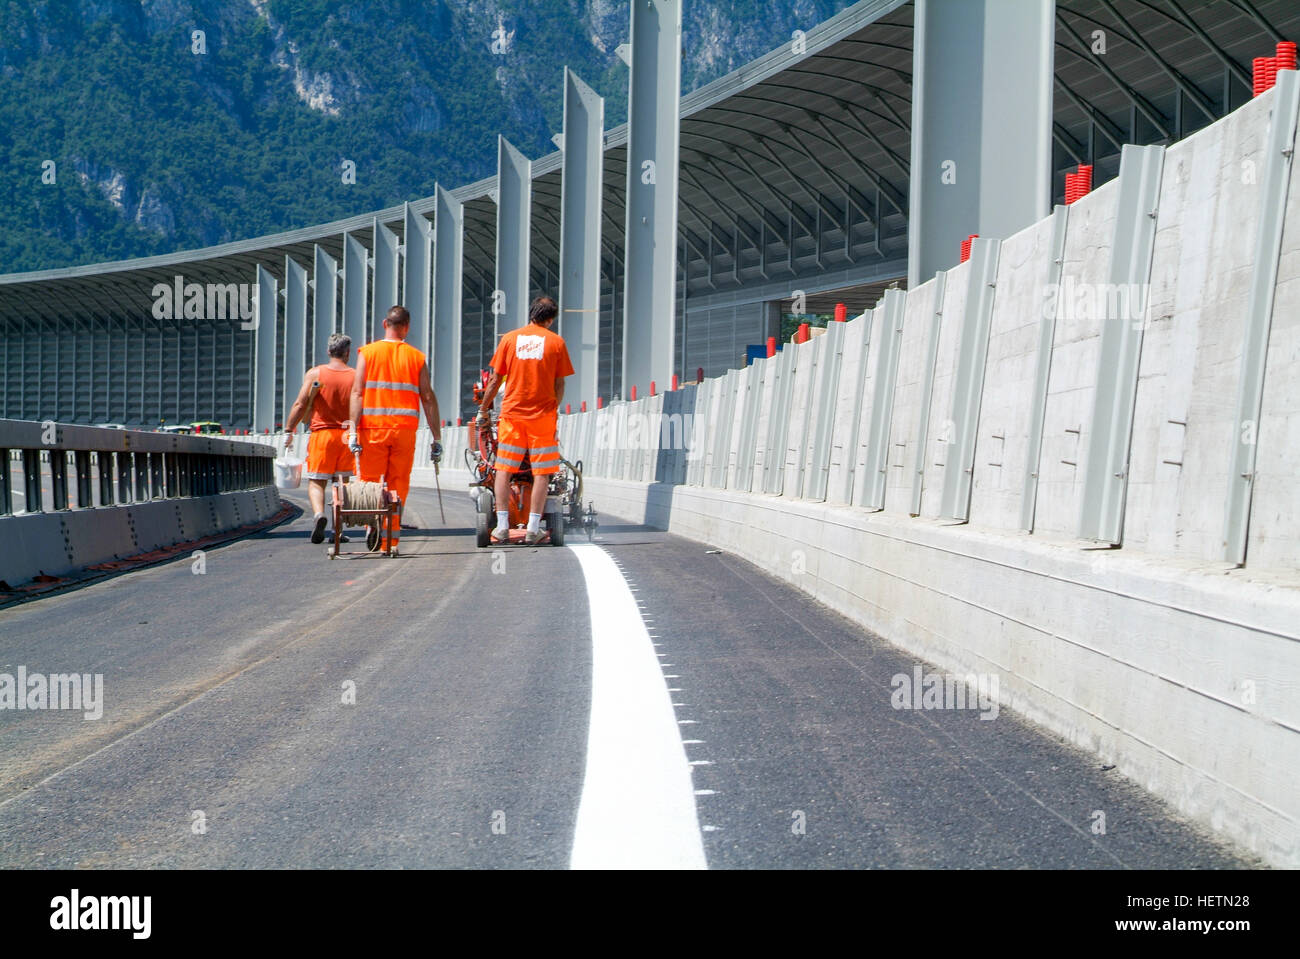 Ascona, Suisse - 20 juin 2011 : éjection de la machine et des travailleurs sur la route et de la circulation peintures Banque D'Images